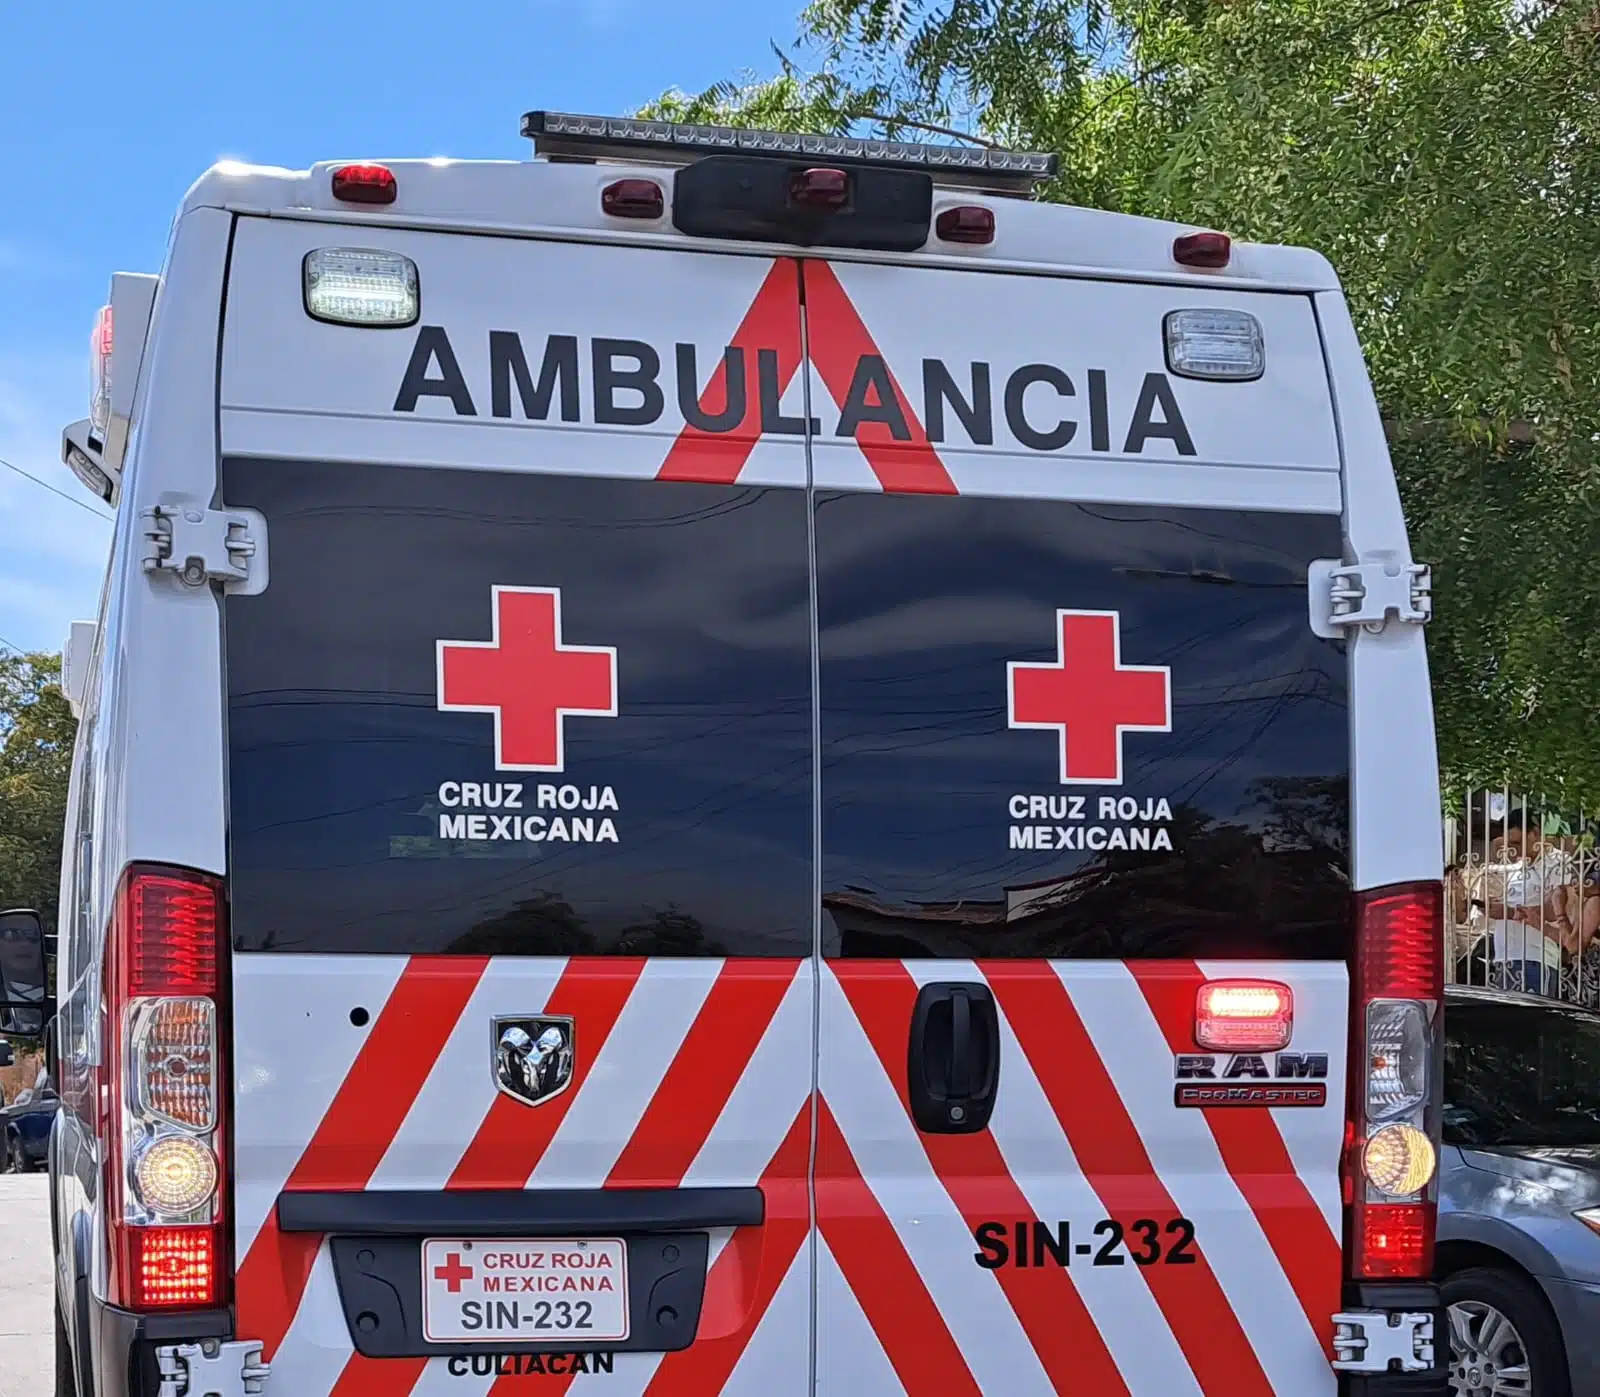 Ambulancia de Cruz Roja Culiacán